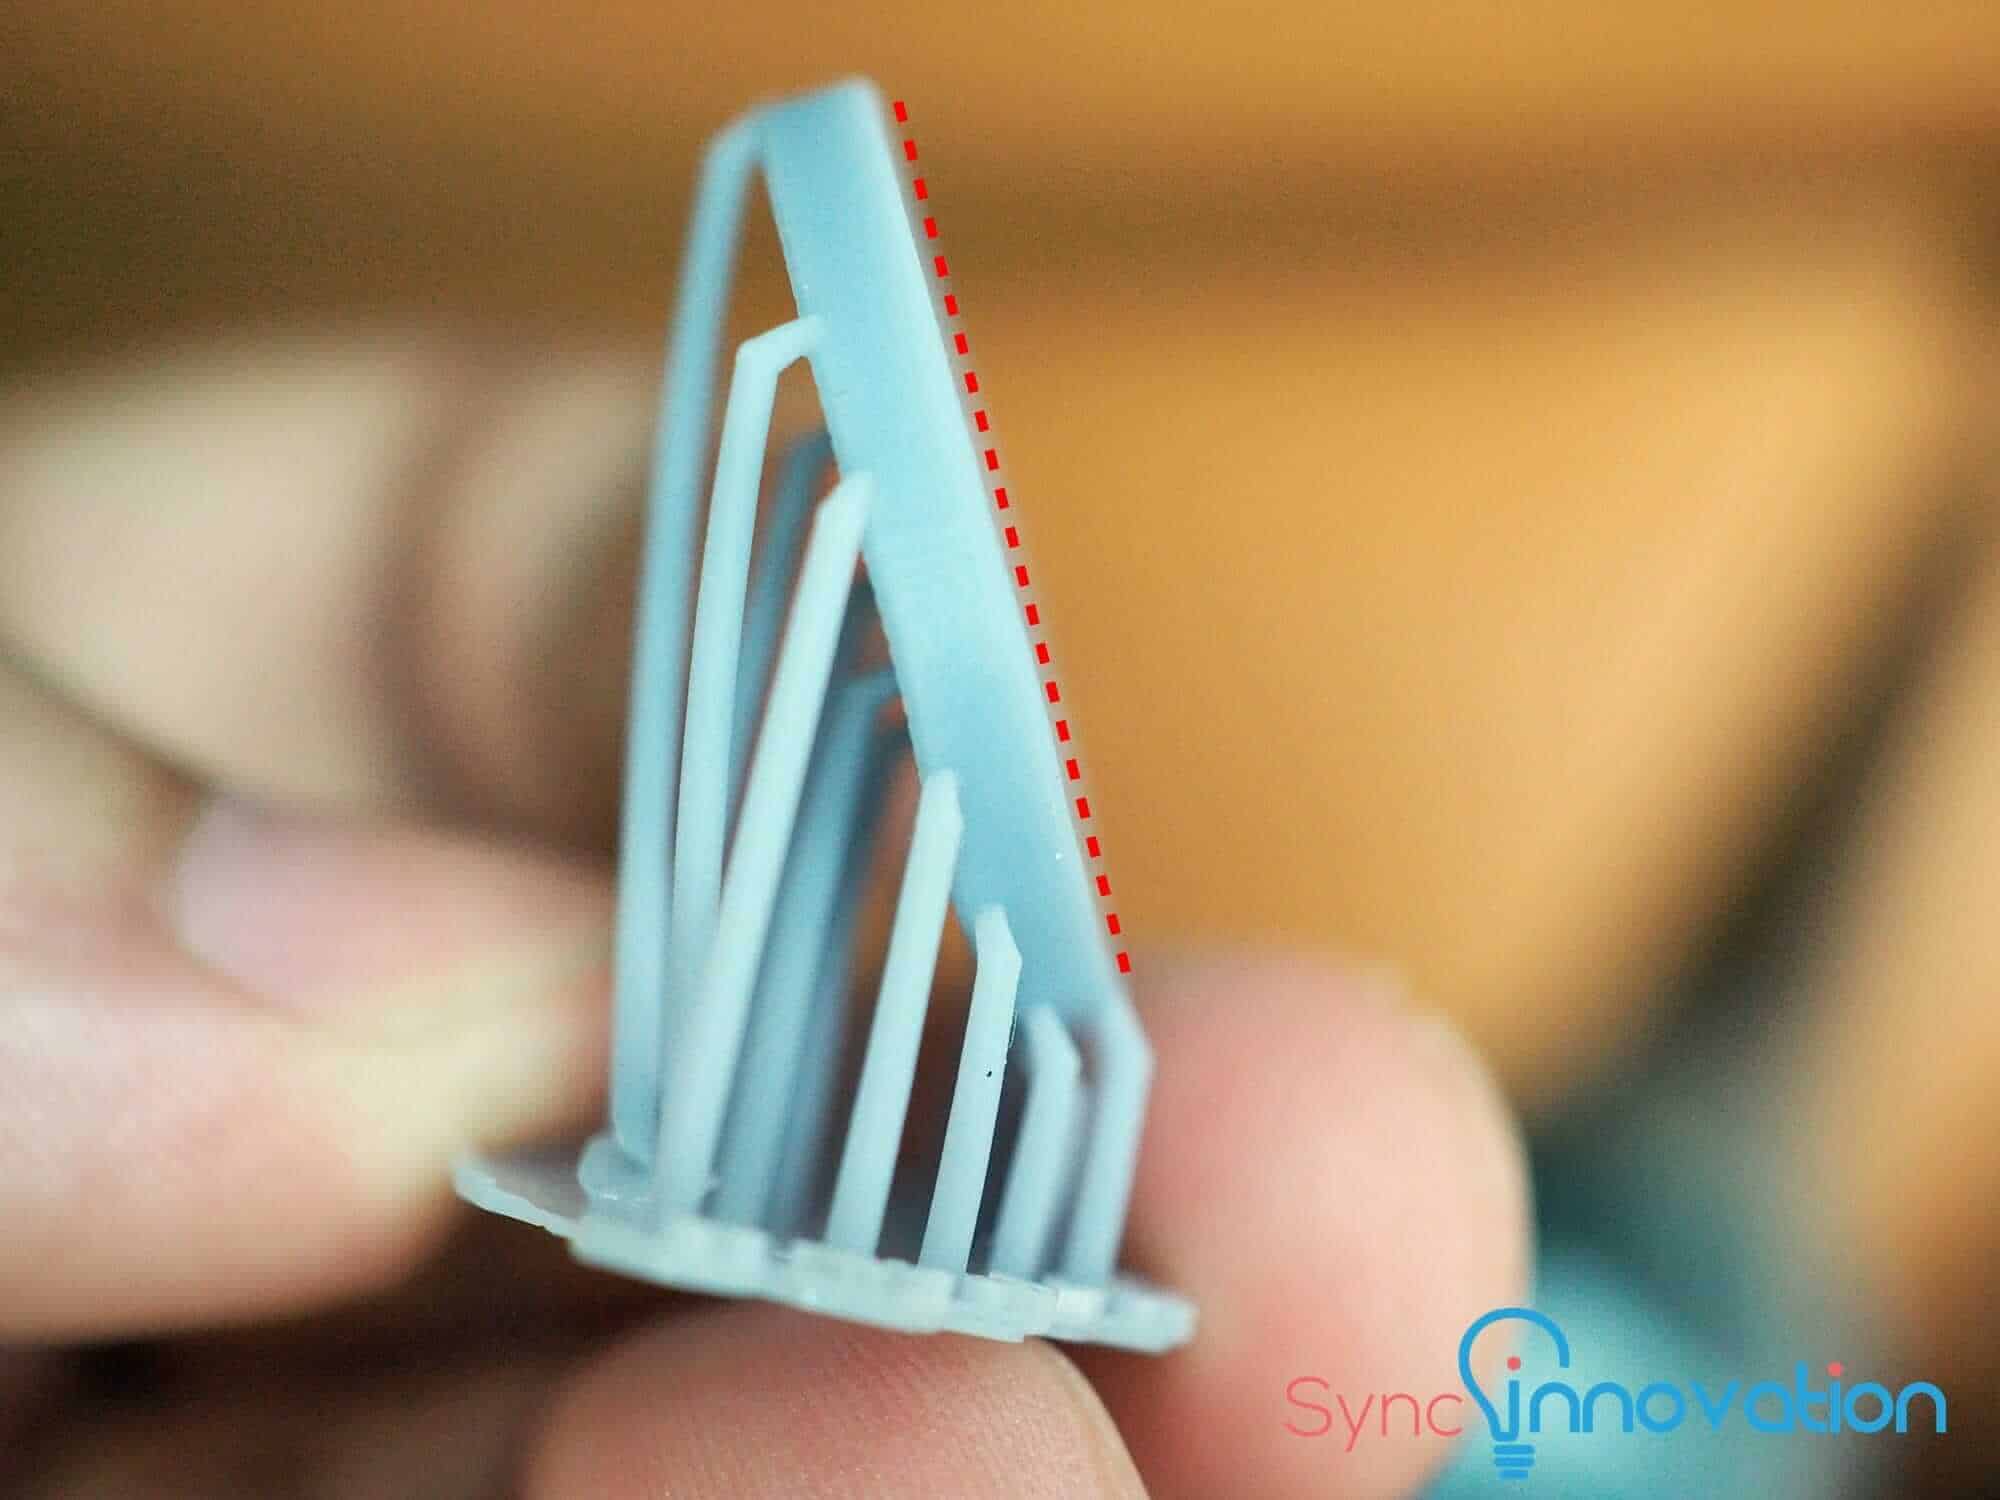 Resin 3D Printer กับเทคนิคการวางชิ้นงานให้เหมาะสม